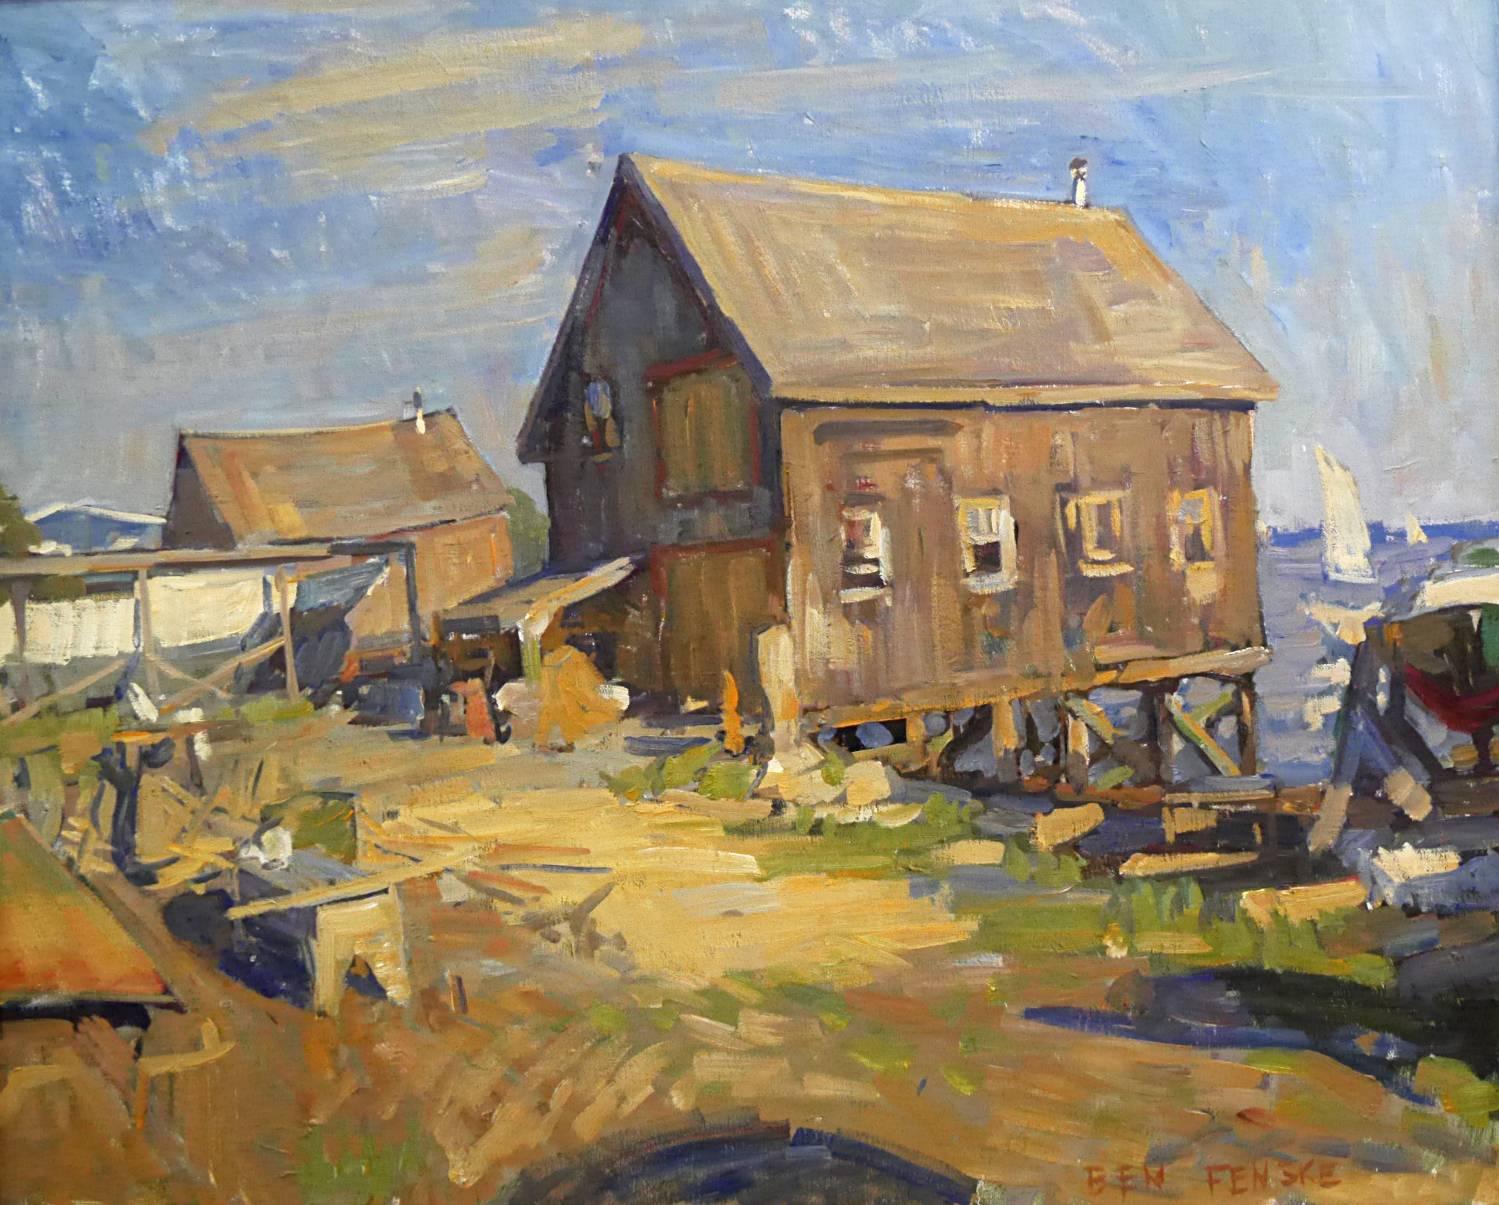 Landscape Painting Ben Fenske - "Boathouse, Evening Light" peinture à l'huile impressionniste contemporaine en plein air.